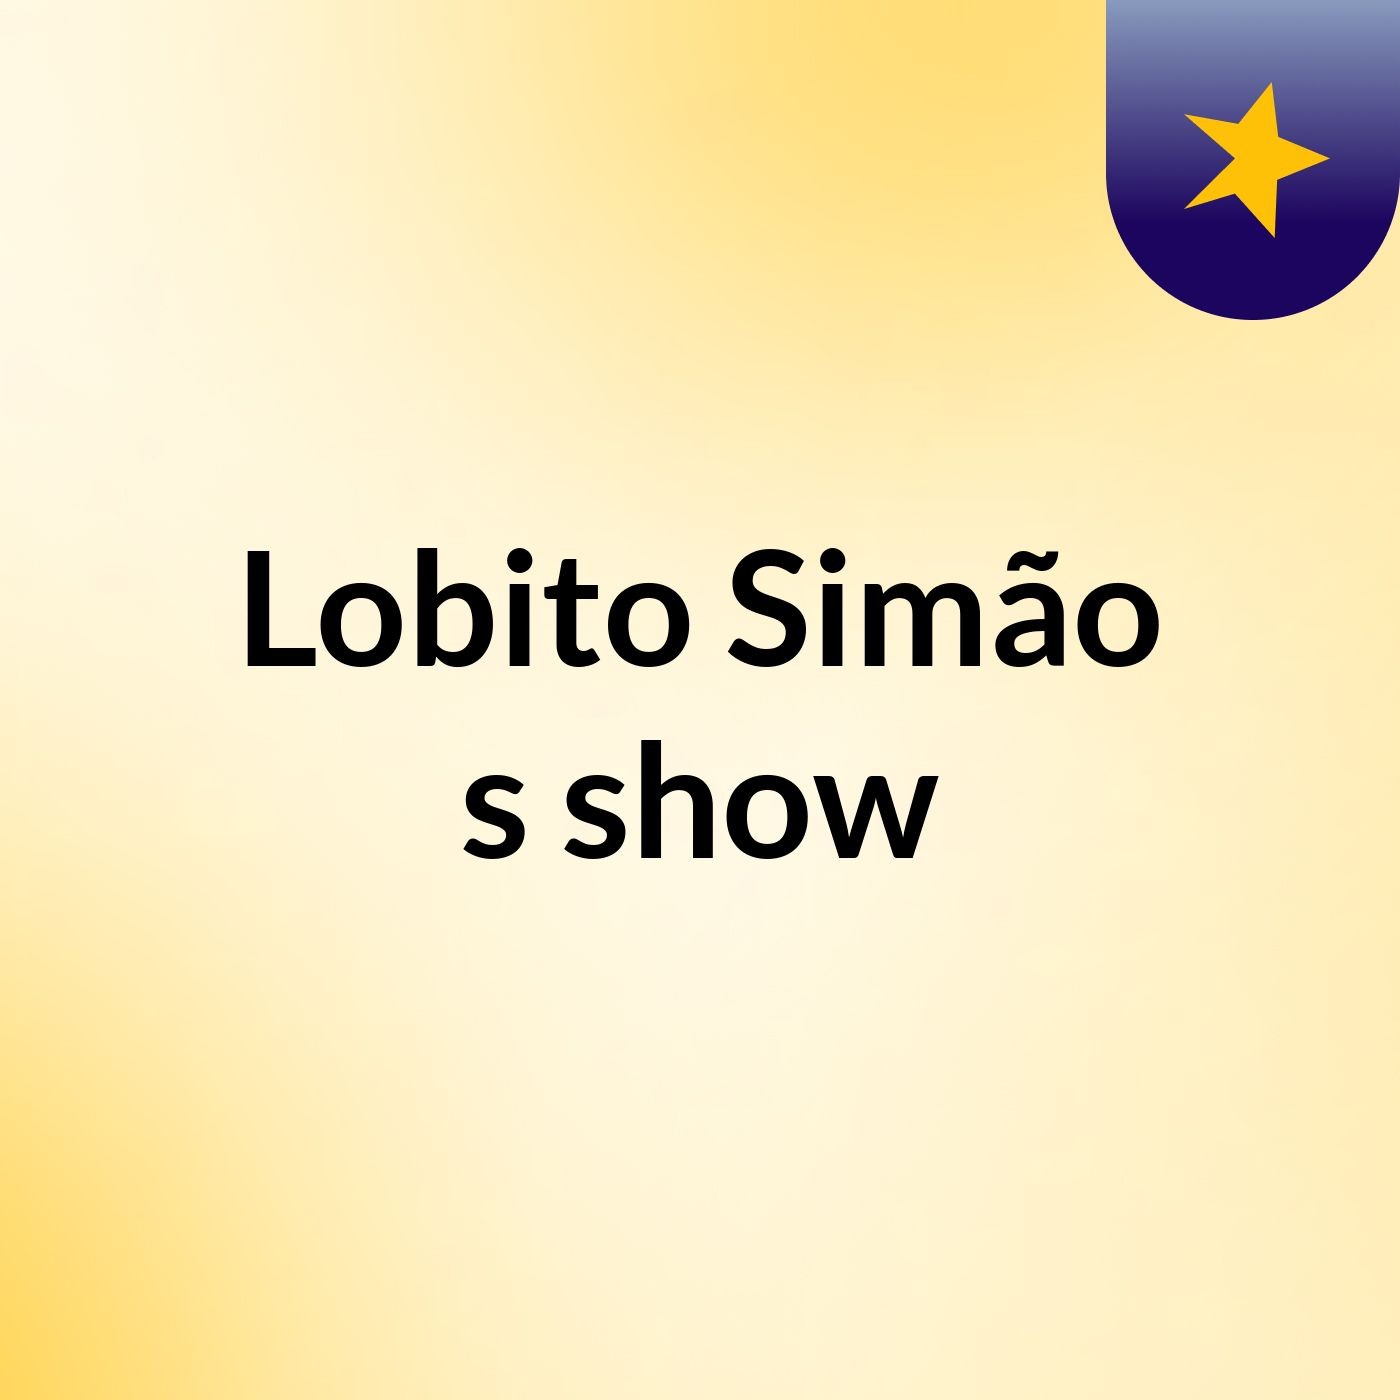 Lobito Simão's show